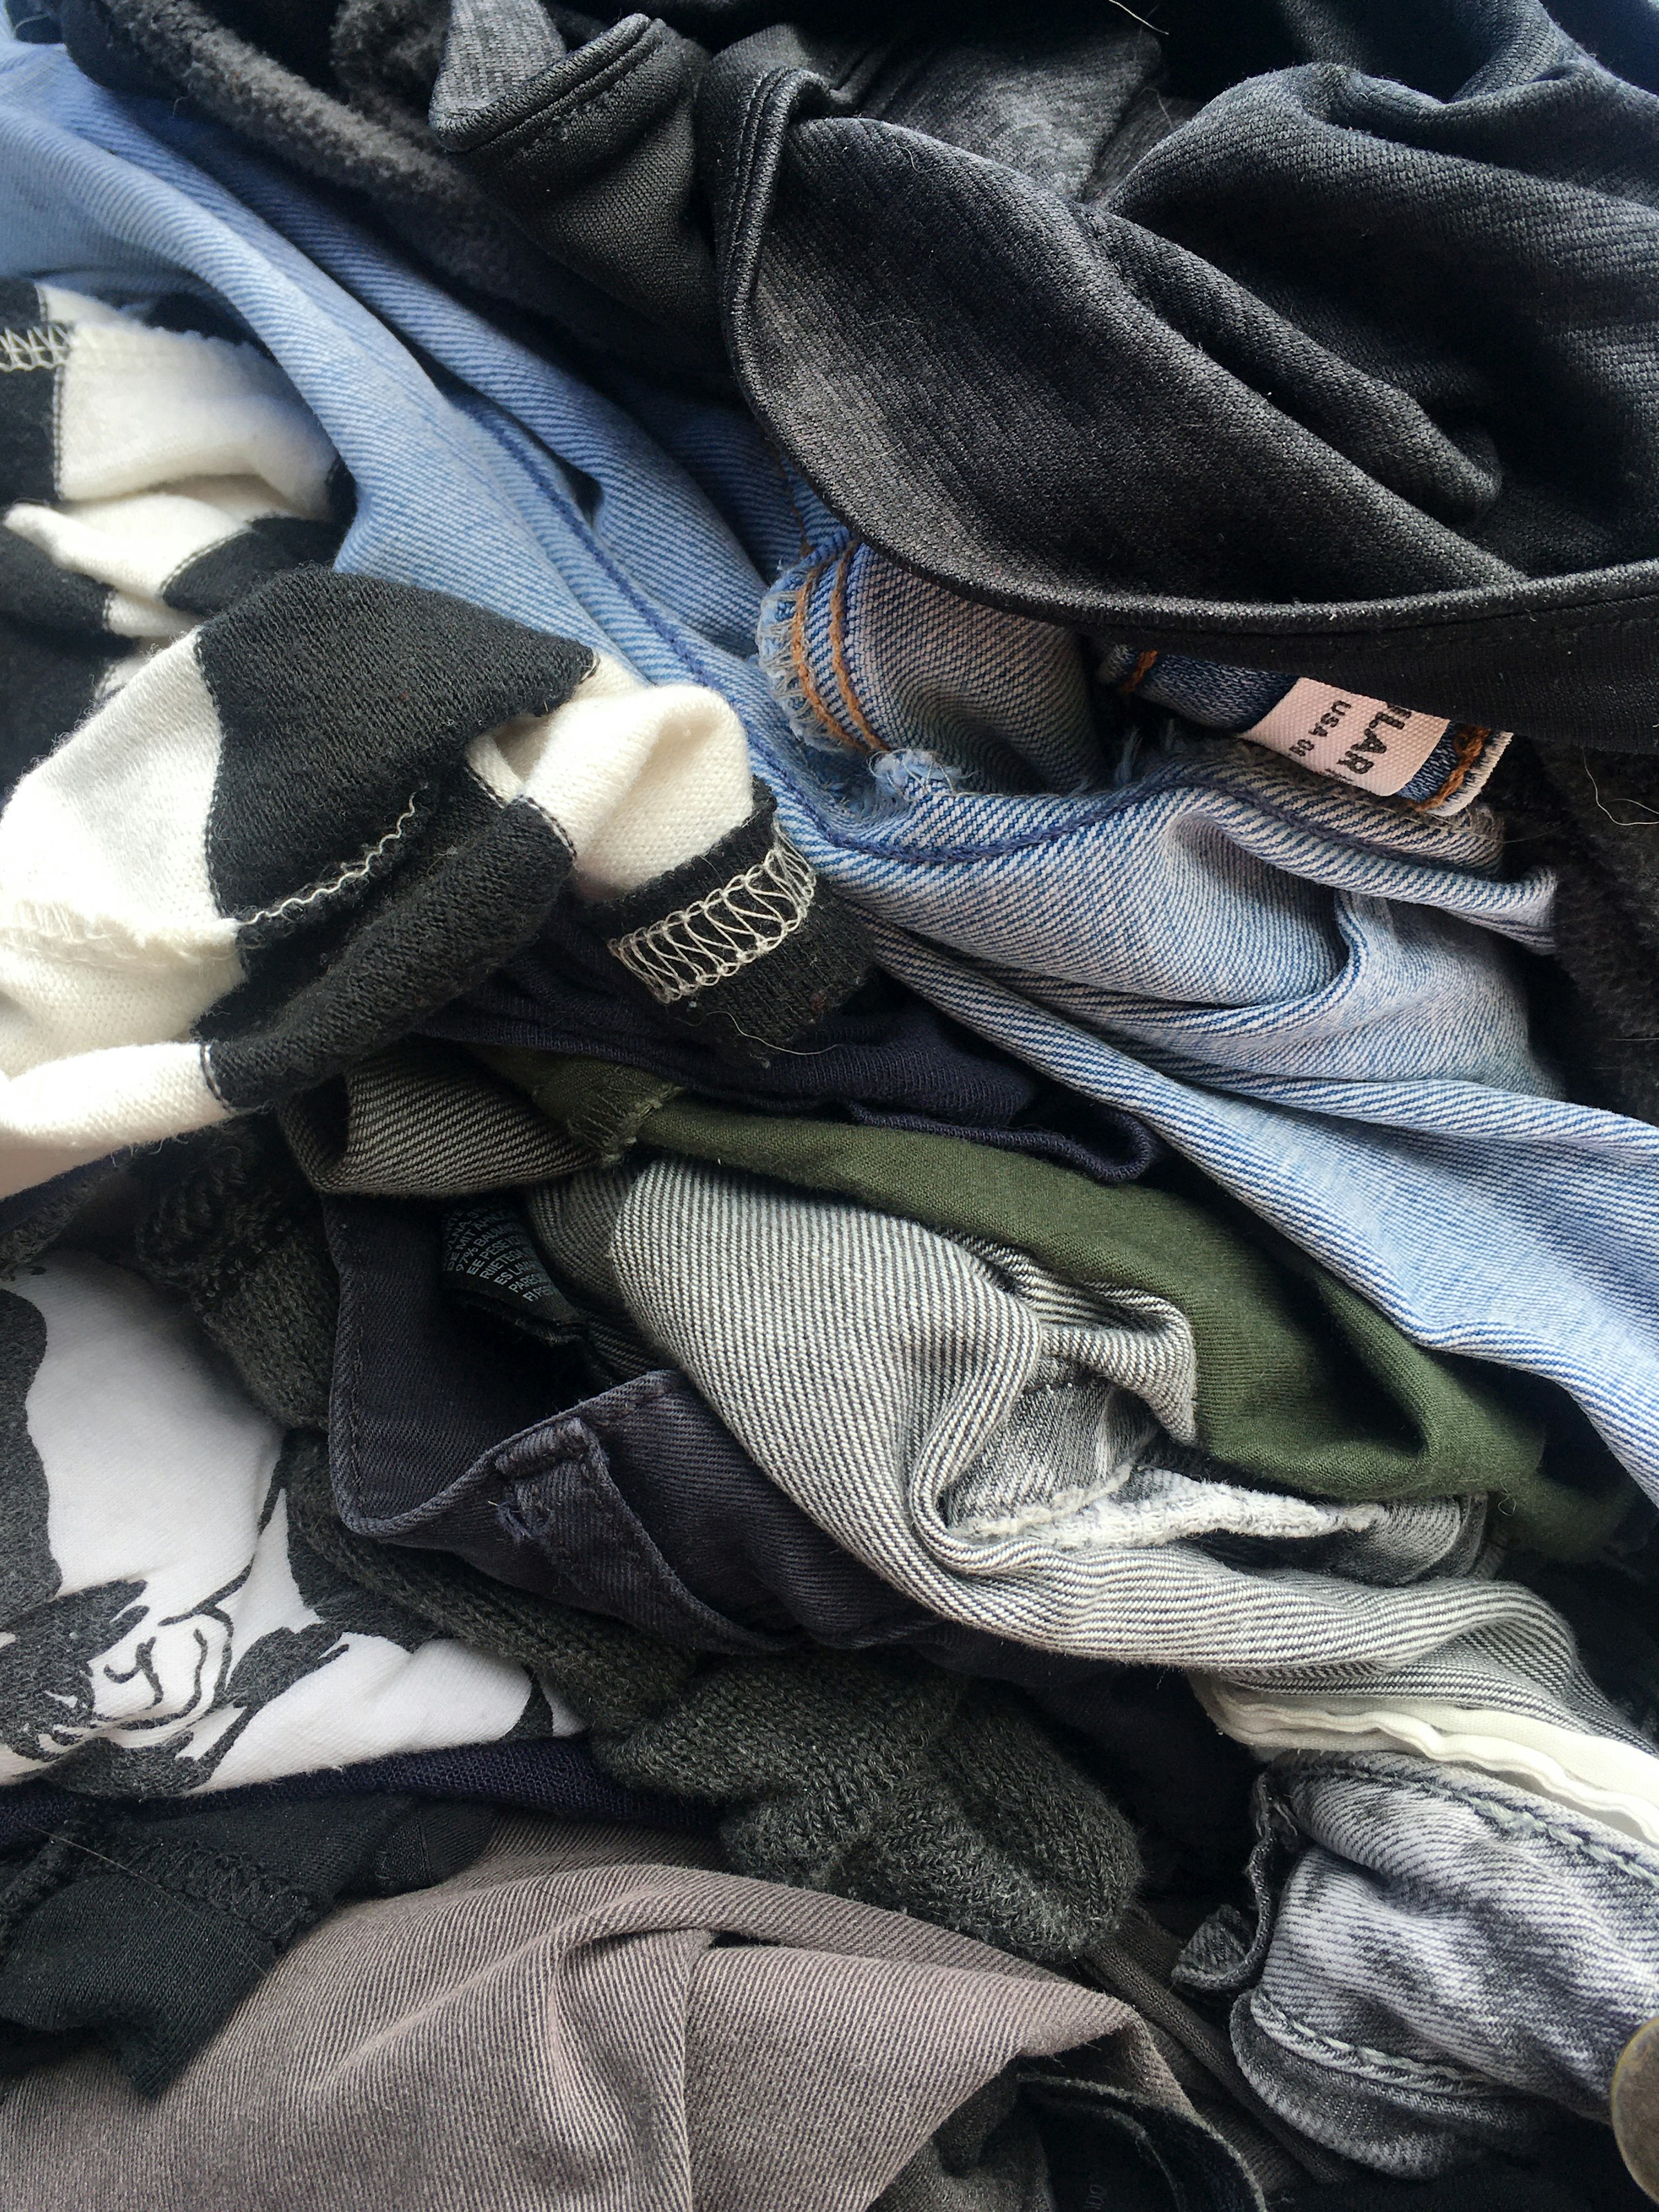 A pile of clothes | Source: Unsplash